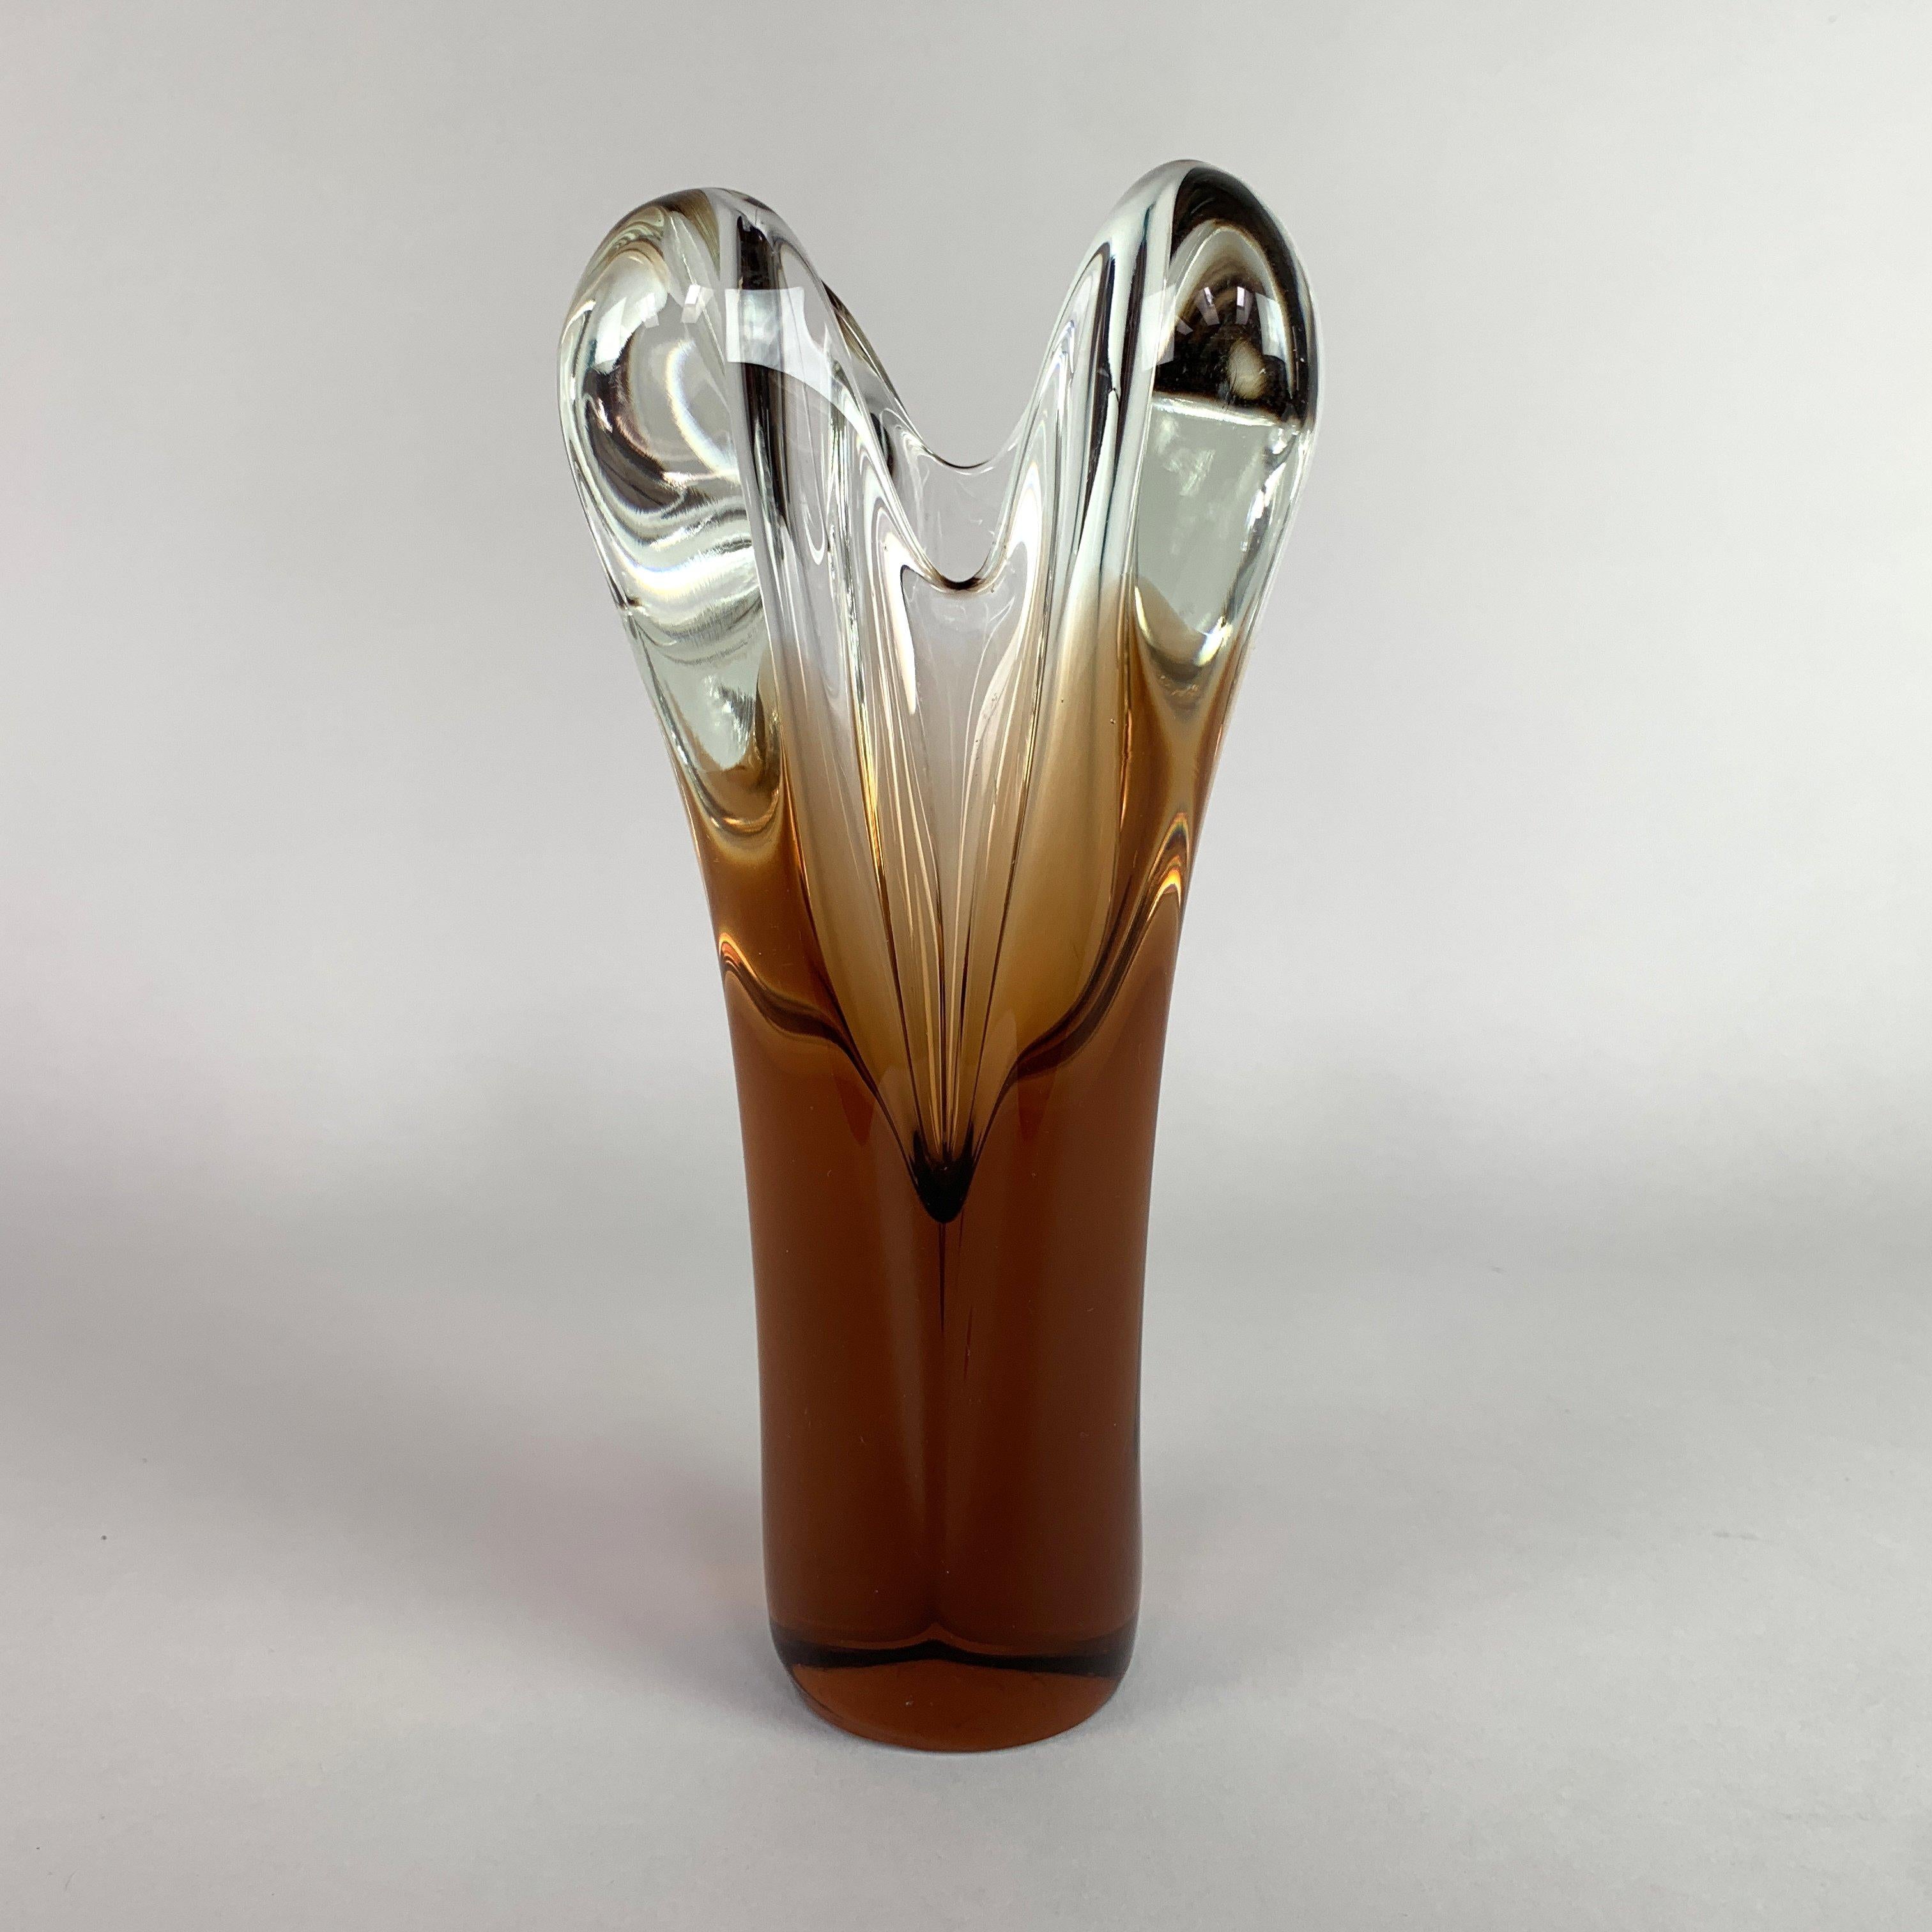 Vase en verre d'art vintage conçu par Jan Beranek et fabriqué par Skrdlovice Glassworks dans les années 1960 dans l'ancienne Tchécoslovaquie. Très bon état vintage. 
L'article mesure environ 23,5 cm de haut. Le poids est d'environ 1,6 kg.